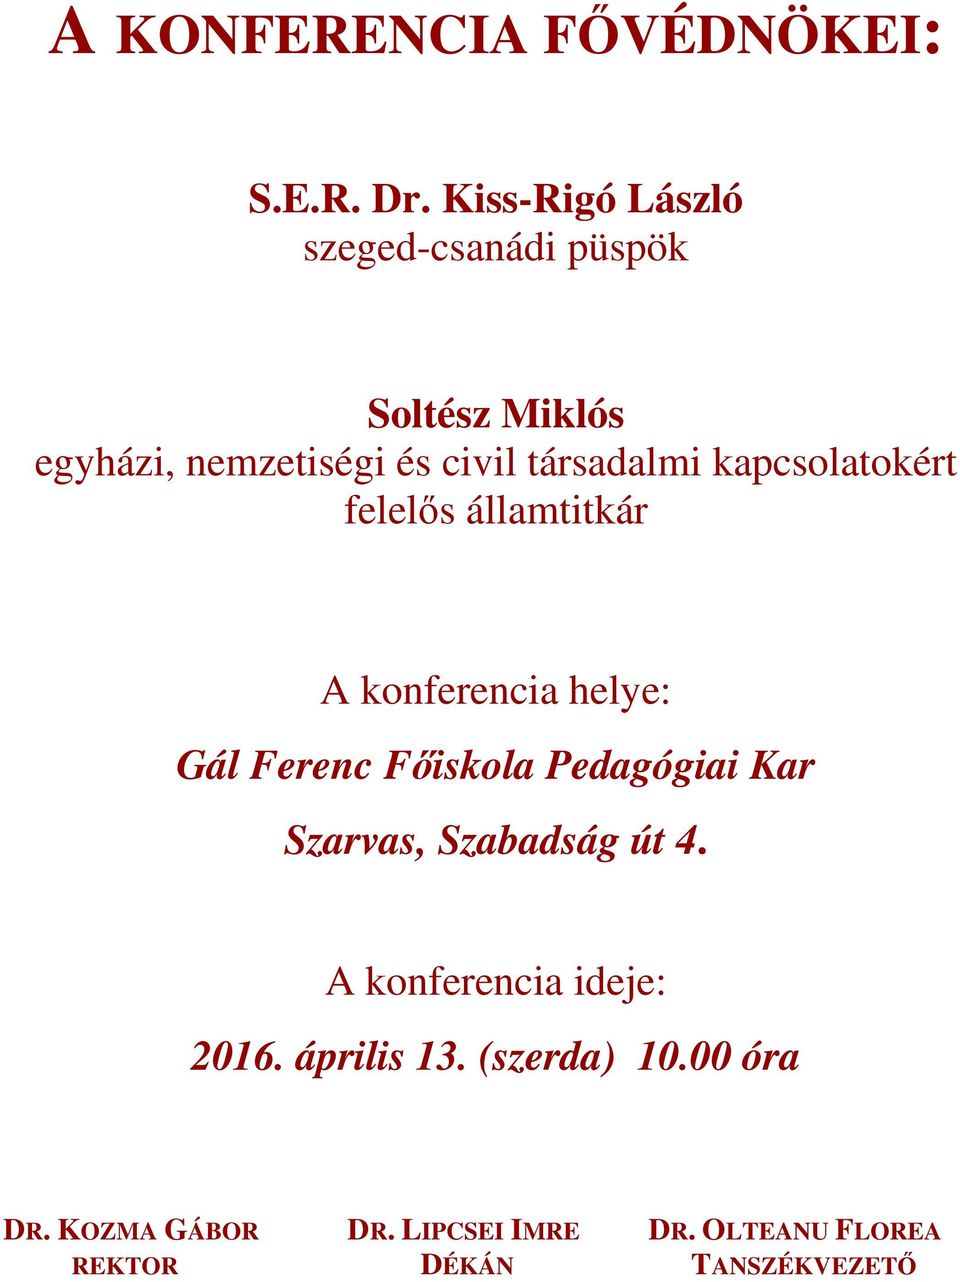 Gál Ferenc Főiskola Pedagógiai Kar. Meghívó - PDF Ingyenes letöltés